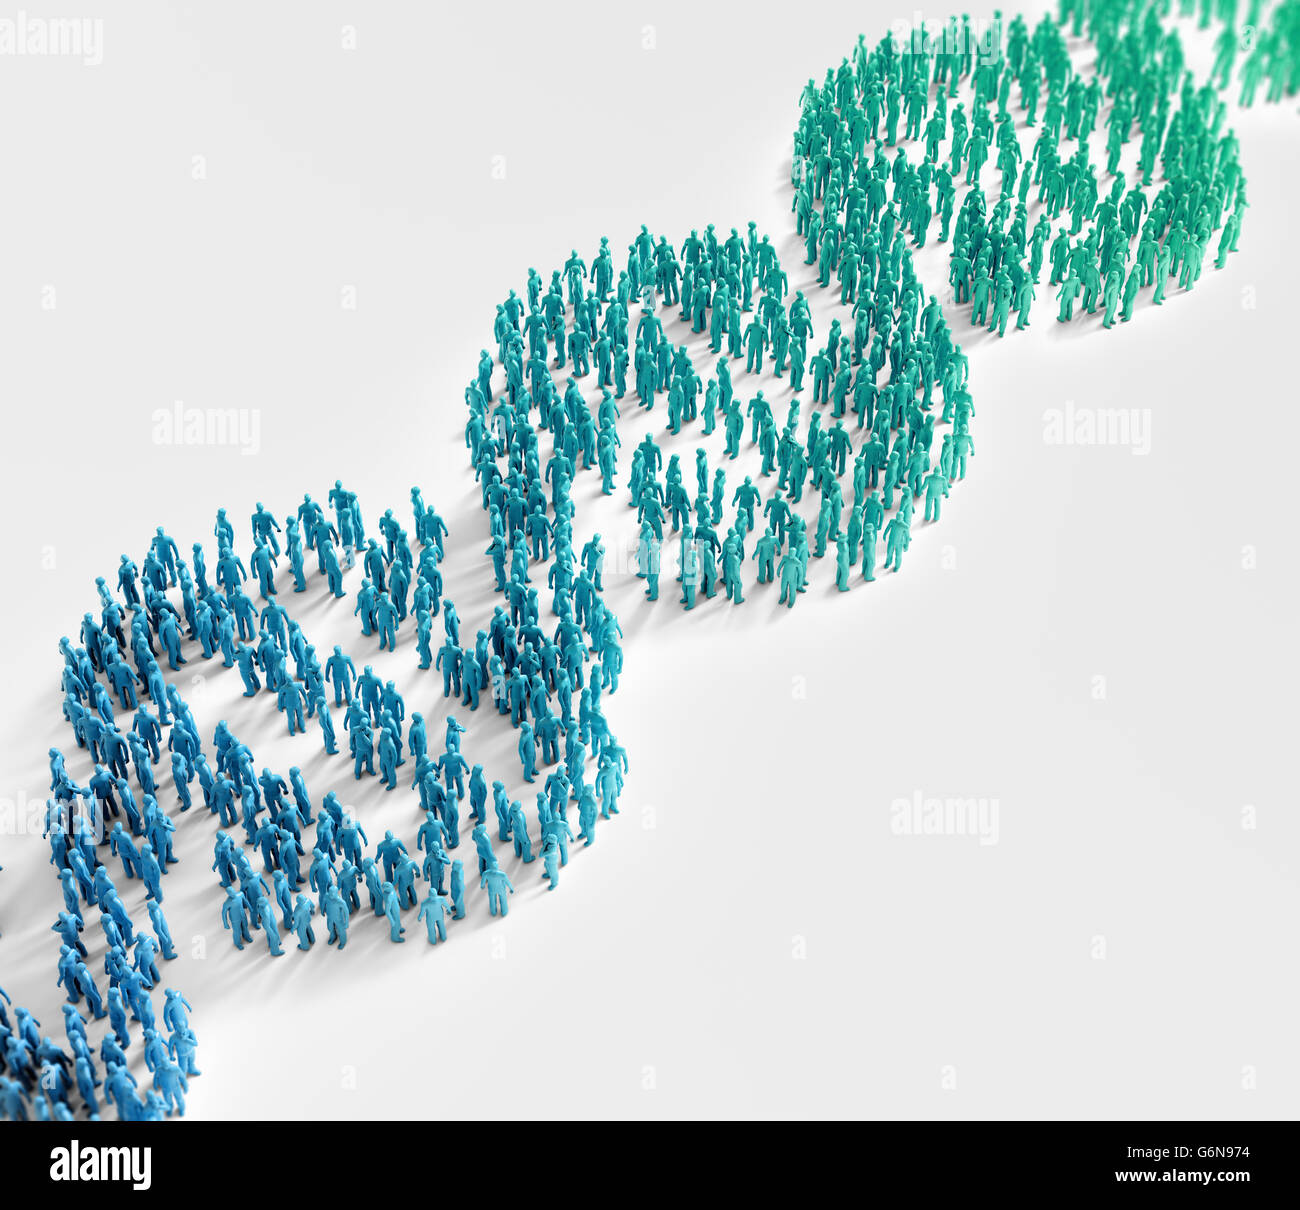 Personas diminutas formando una hélice de ADN símbolo - investigación genética y rasgos genéticos amplia población concepto Foto de stock